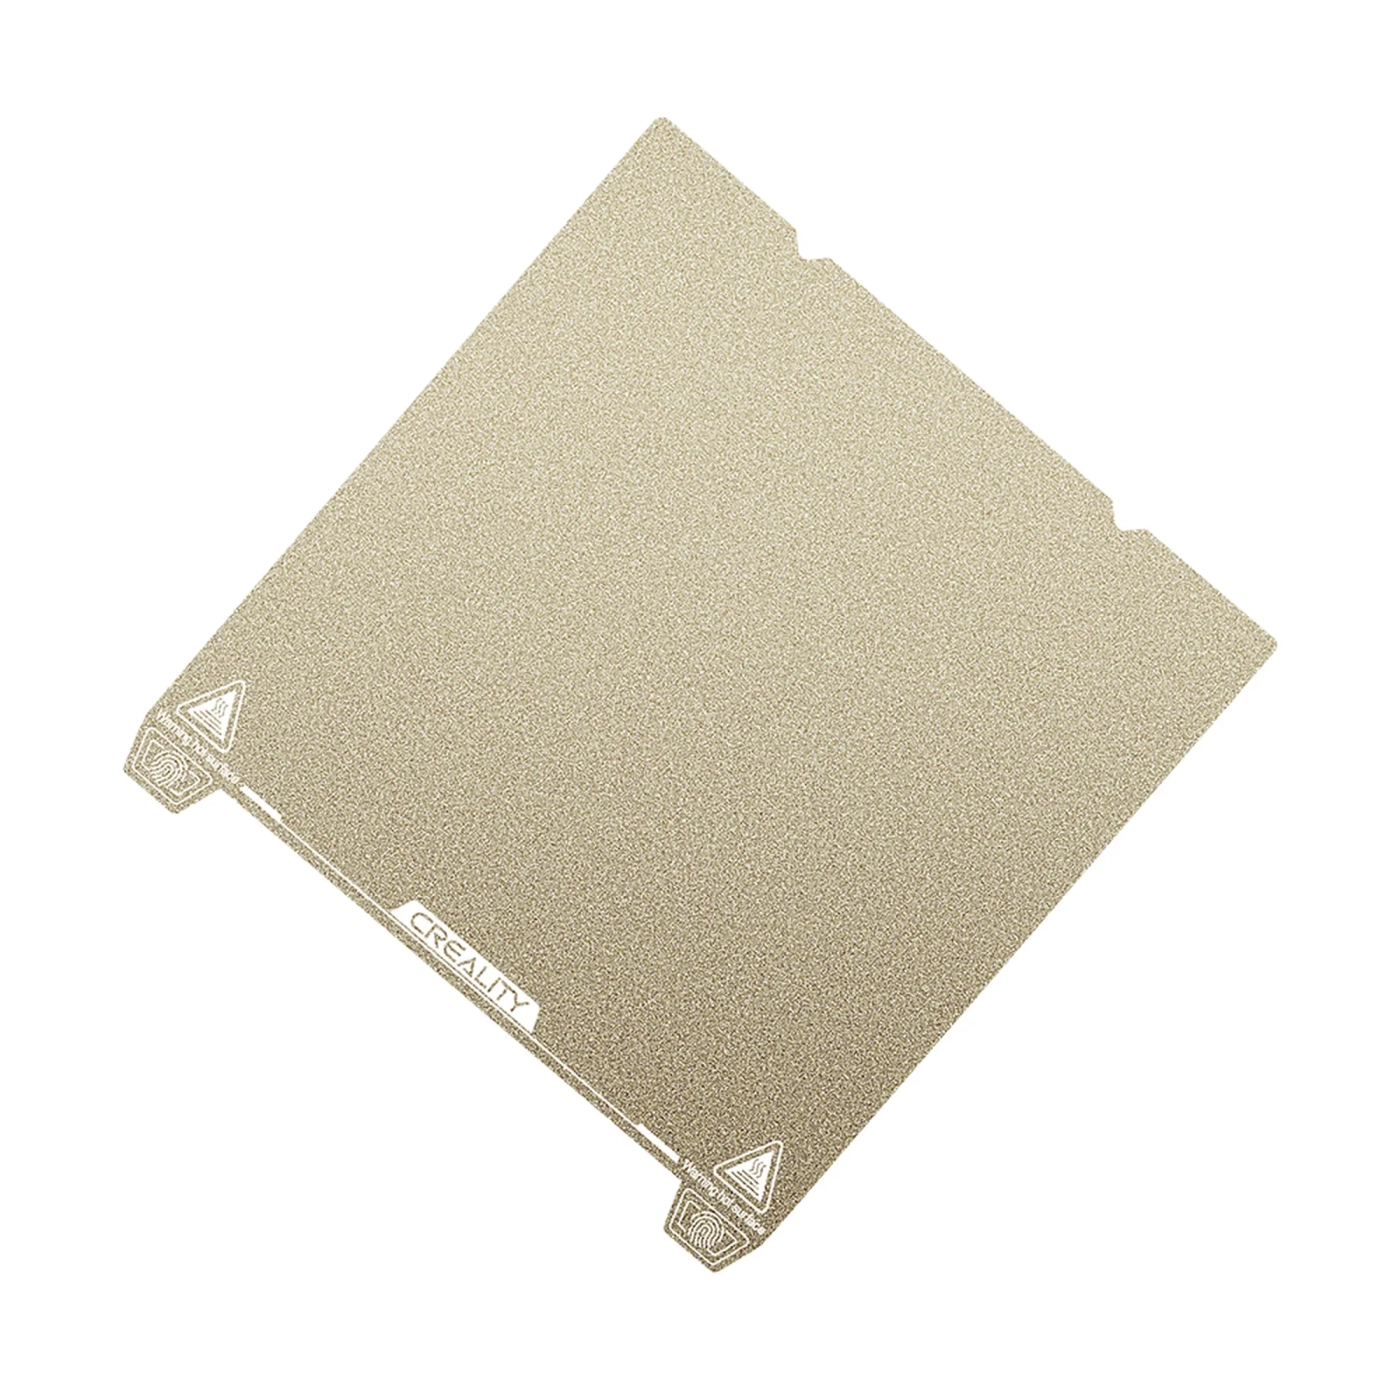 Купити Накладка для платформи CREALITY з PEI покриттям, 235x235mm для 3D принтера Ender-3 S1/S1 Pro - фото 5